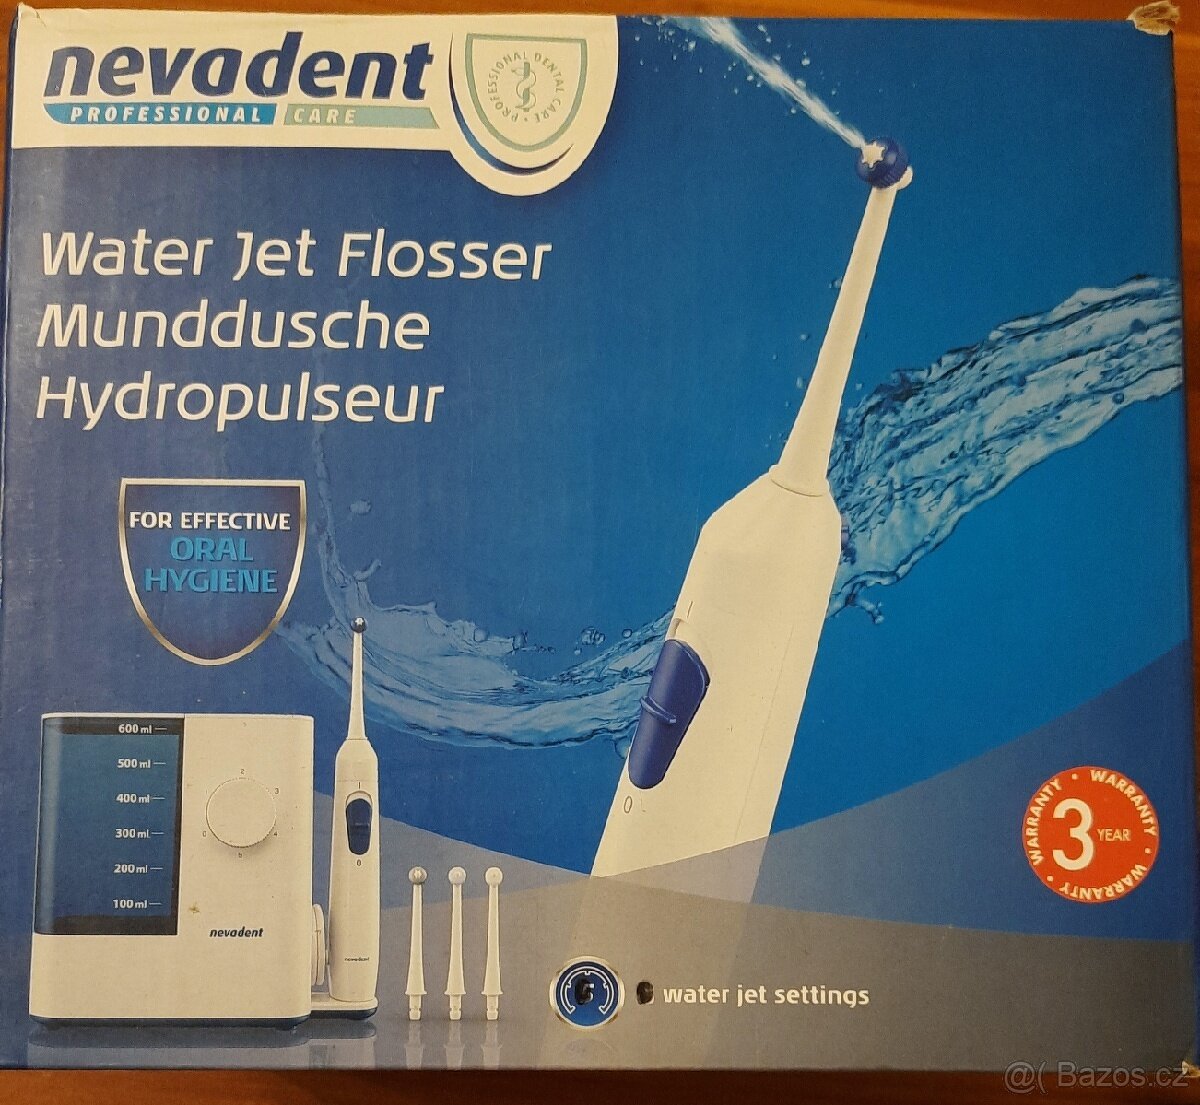 ústní sprcha SMD 24 A1

water jet munddushe hydropulseur